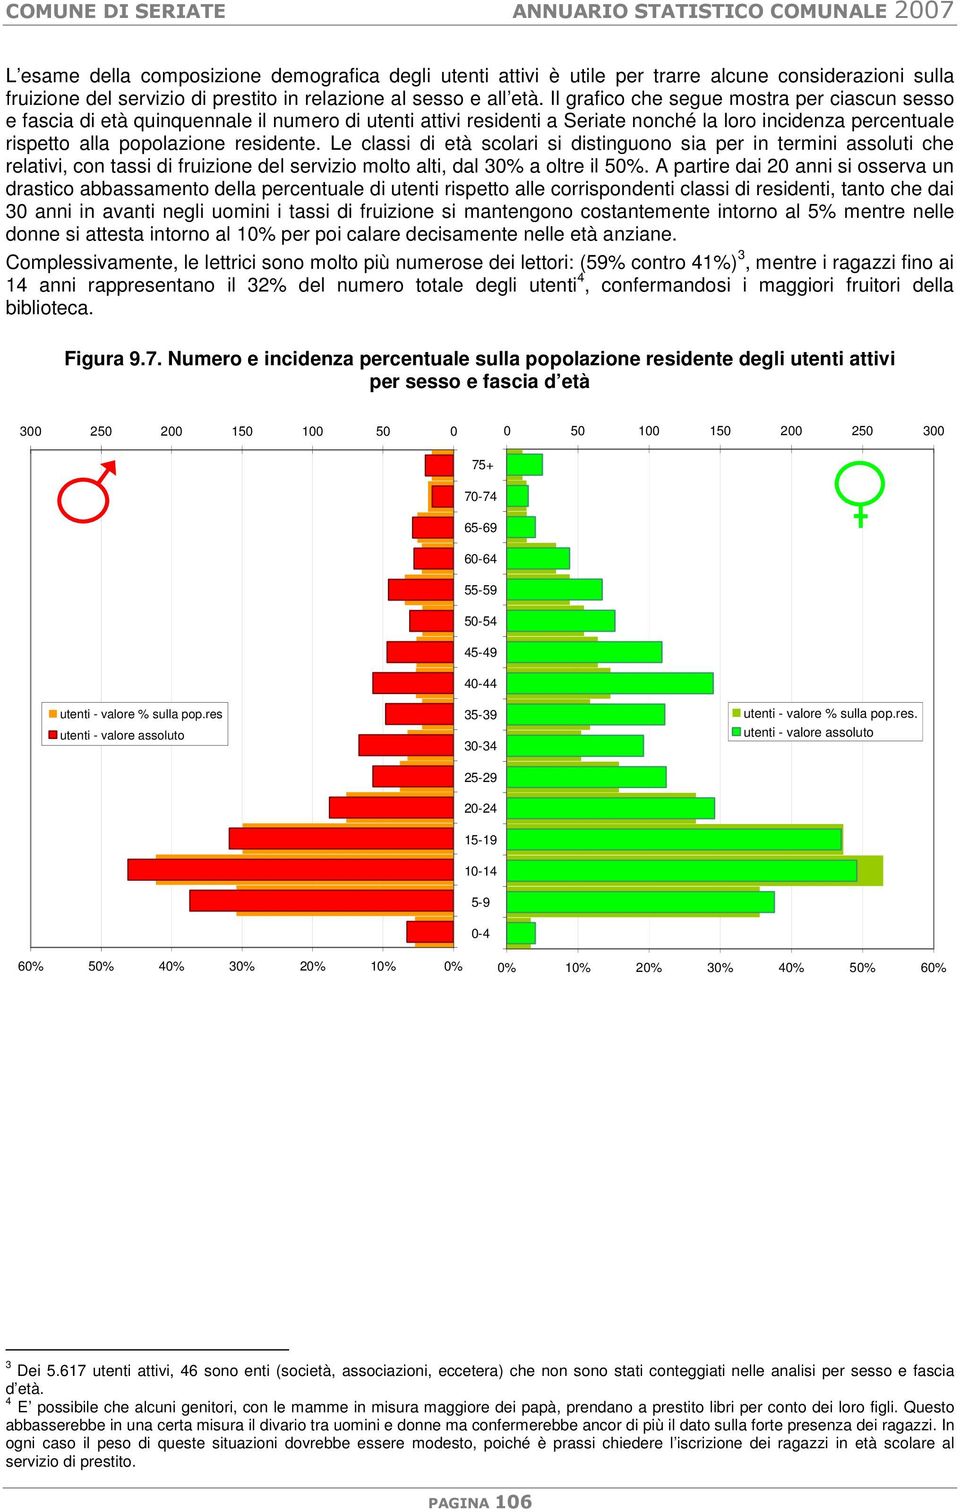 Il grafico che segue mostra per ciascun sesso e fascia di età quinquennale il numero di utenti attivi residenti a Seriate nonché la loro incidenza percentuale rispetto alla popolazione residente.